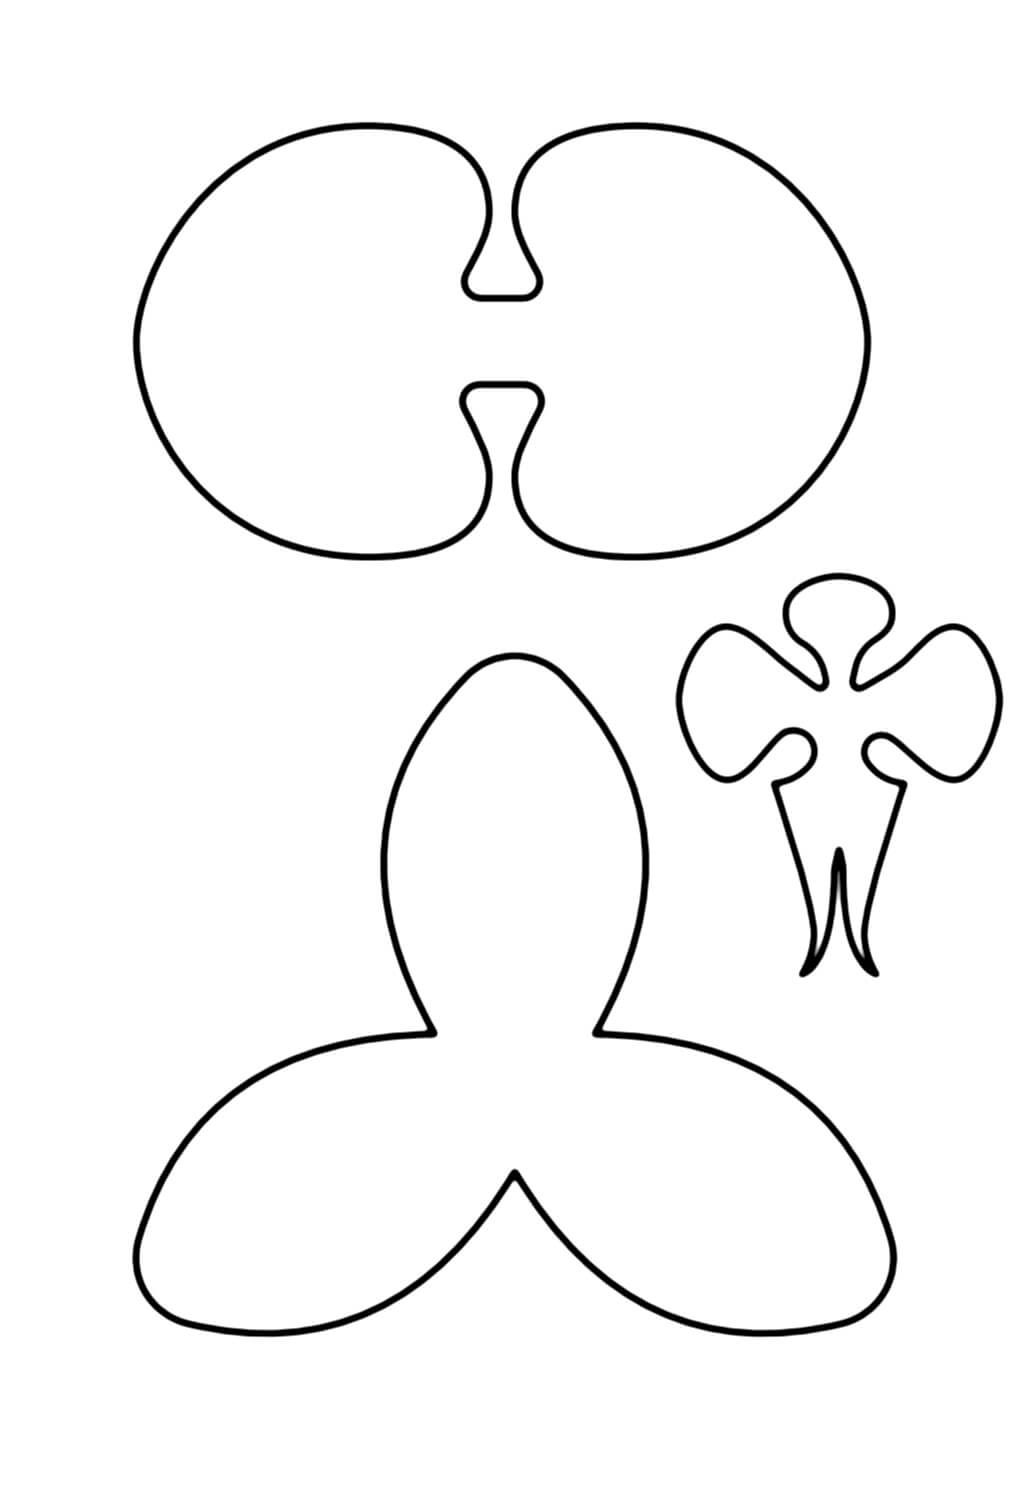 Орхидея - как сделать цветок из бумаги своими руками. Мастер класс, шаблон